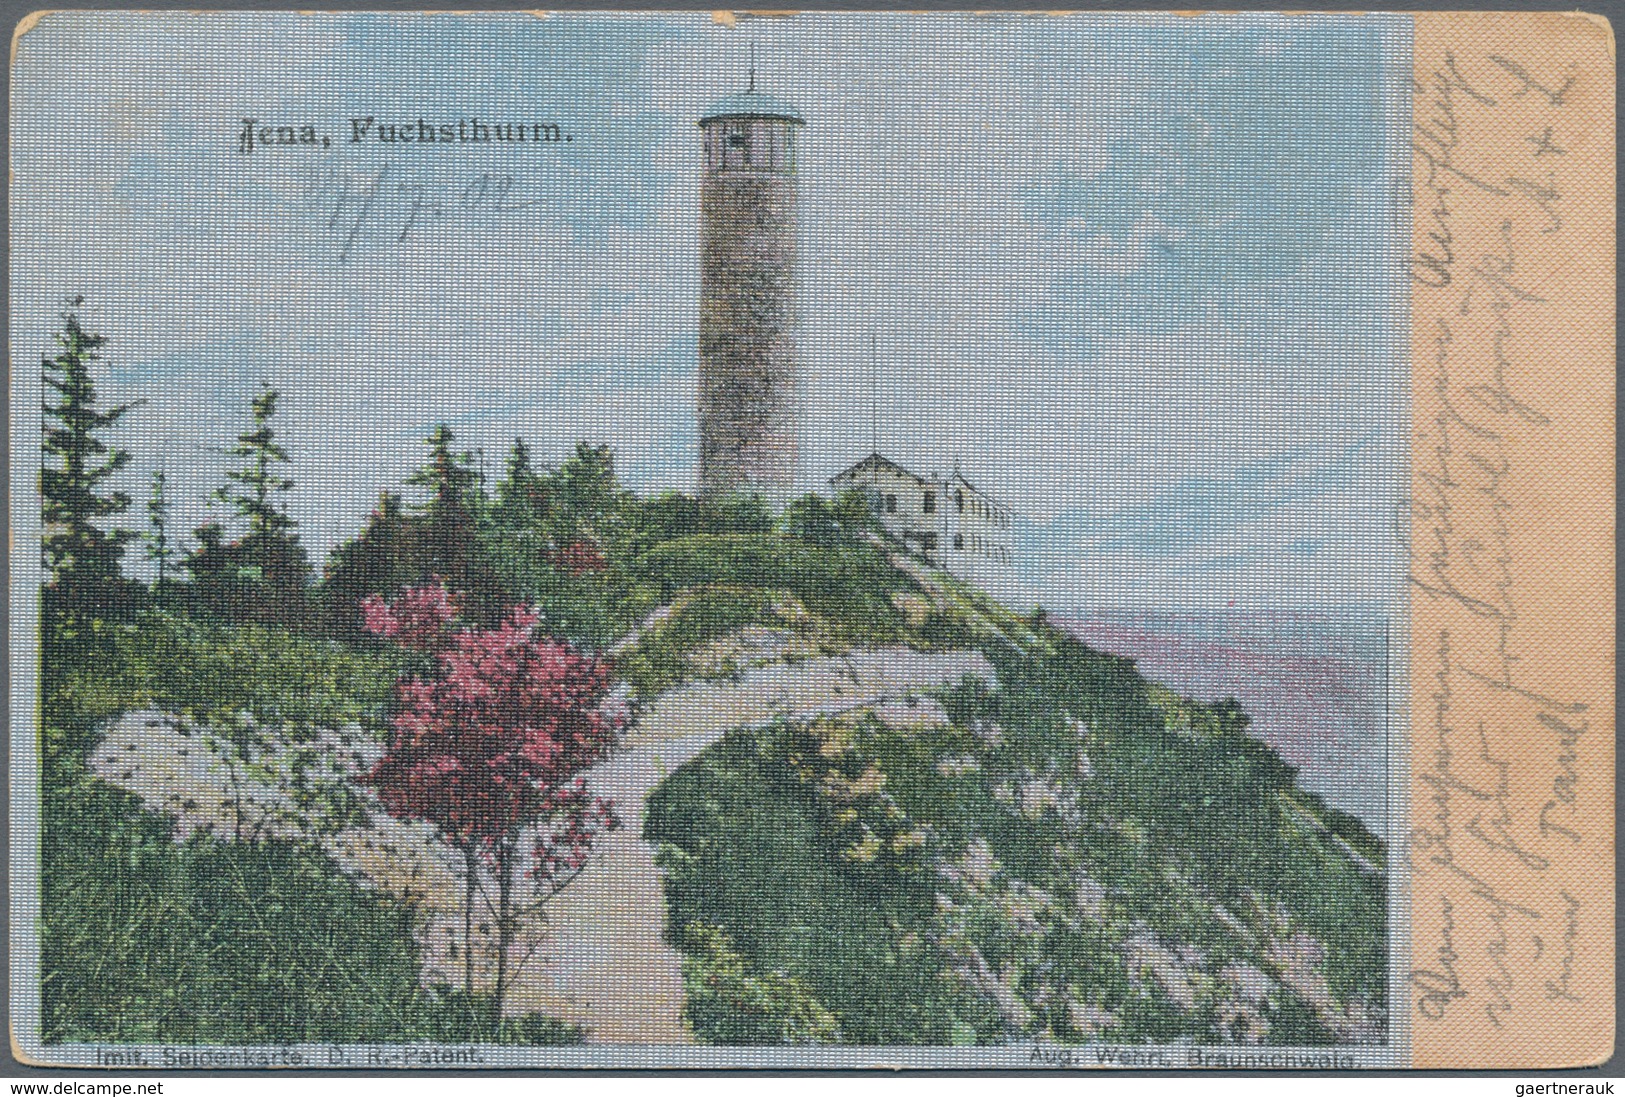 Ansichtskarten: Thüringen: SCHACHTEL mit über 500 historischen Ansichtskarten ab 1898 bis ungefähr 1